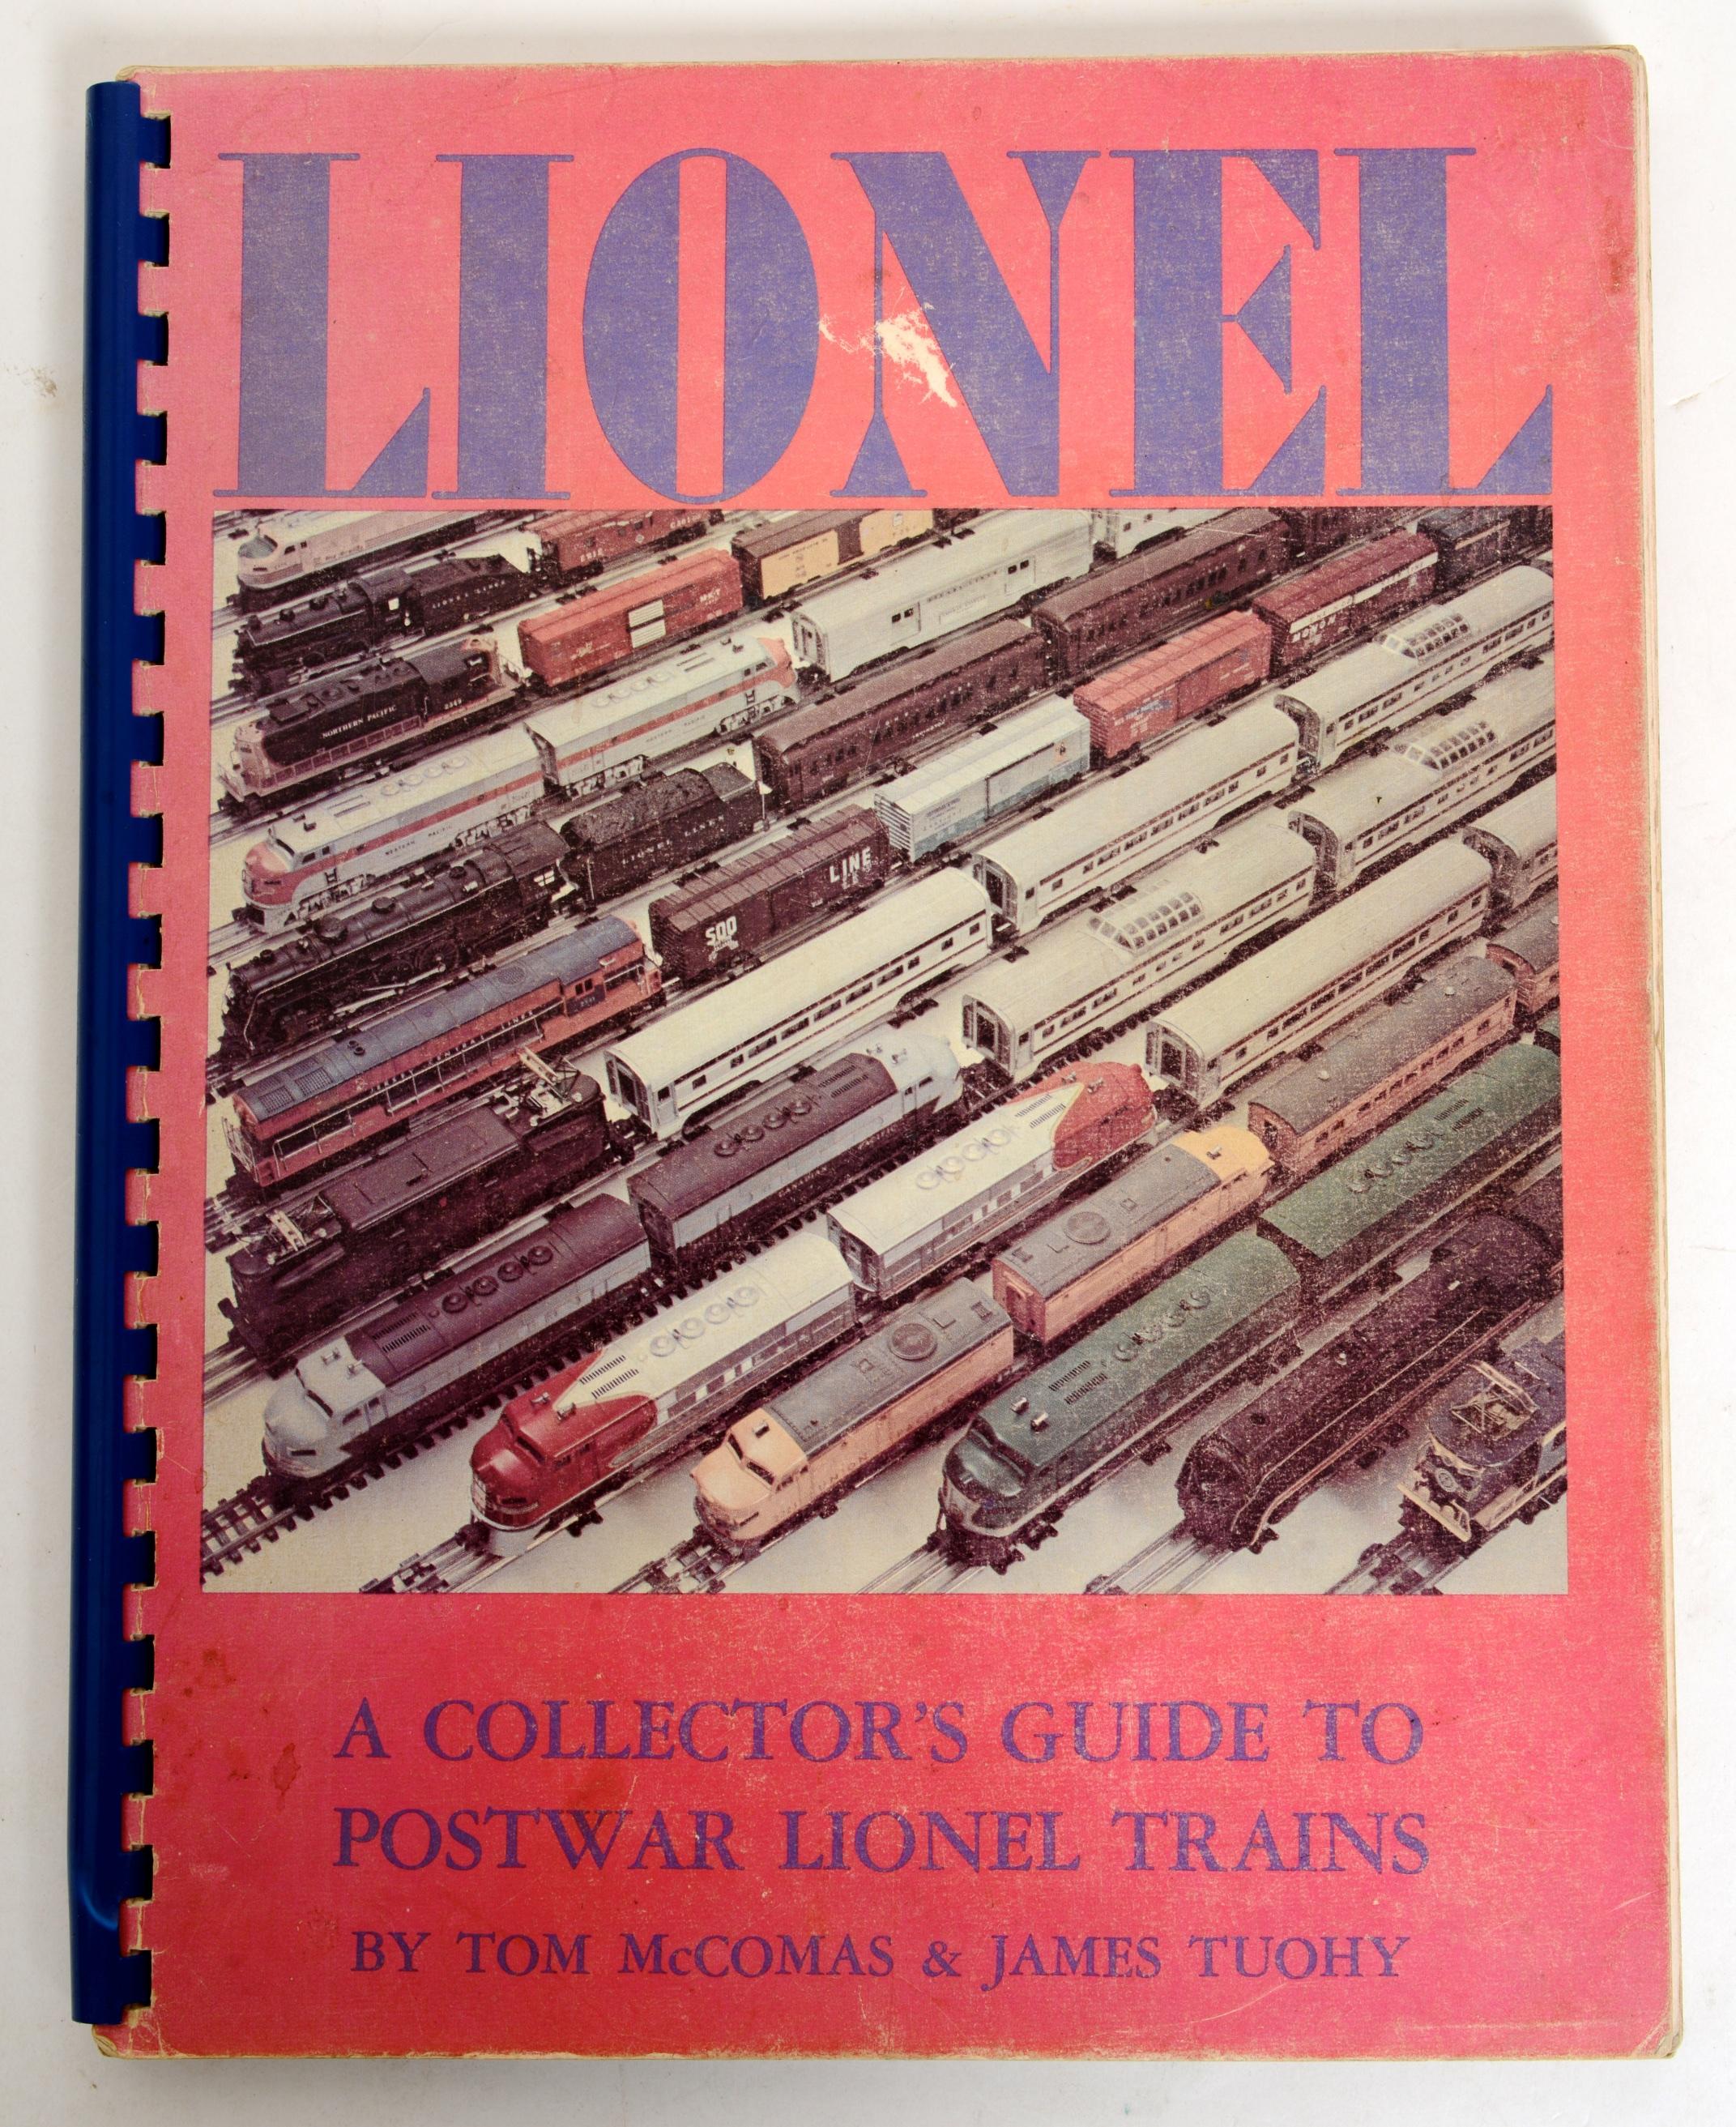 lionel train books